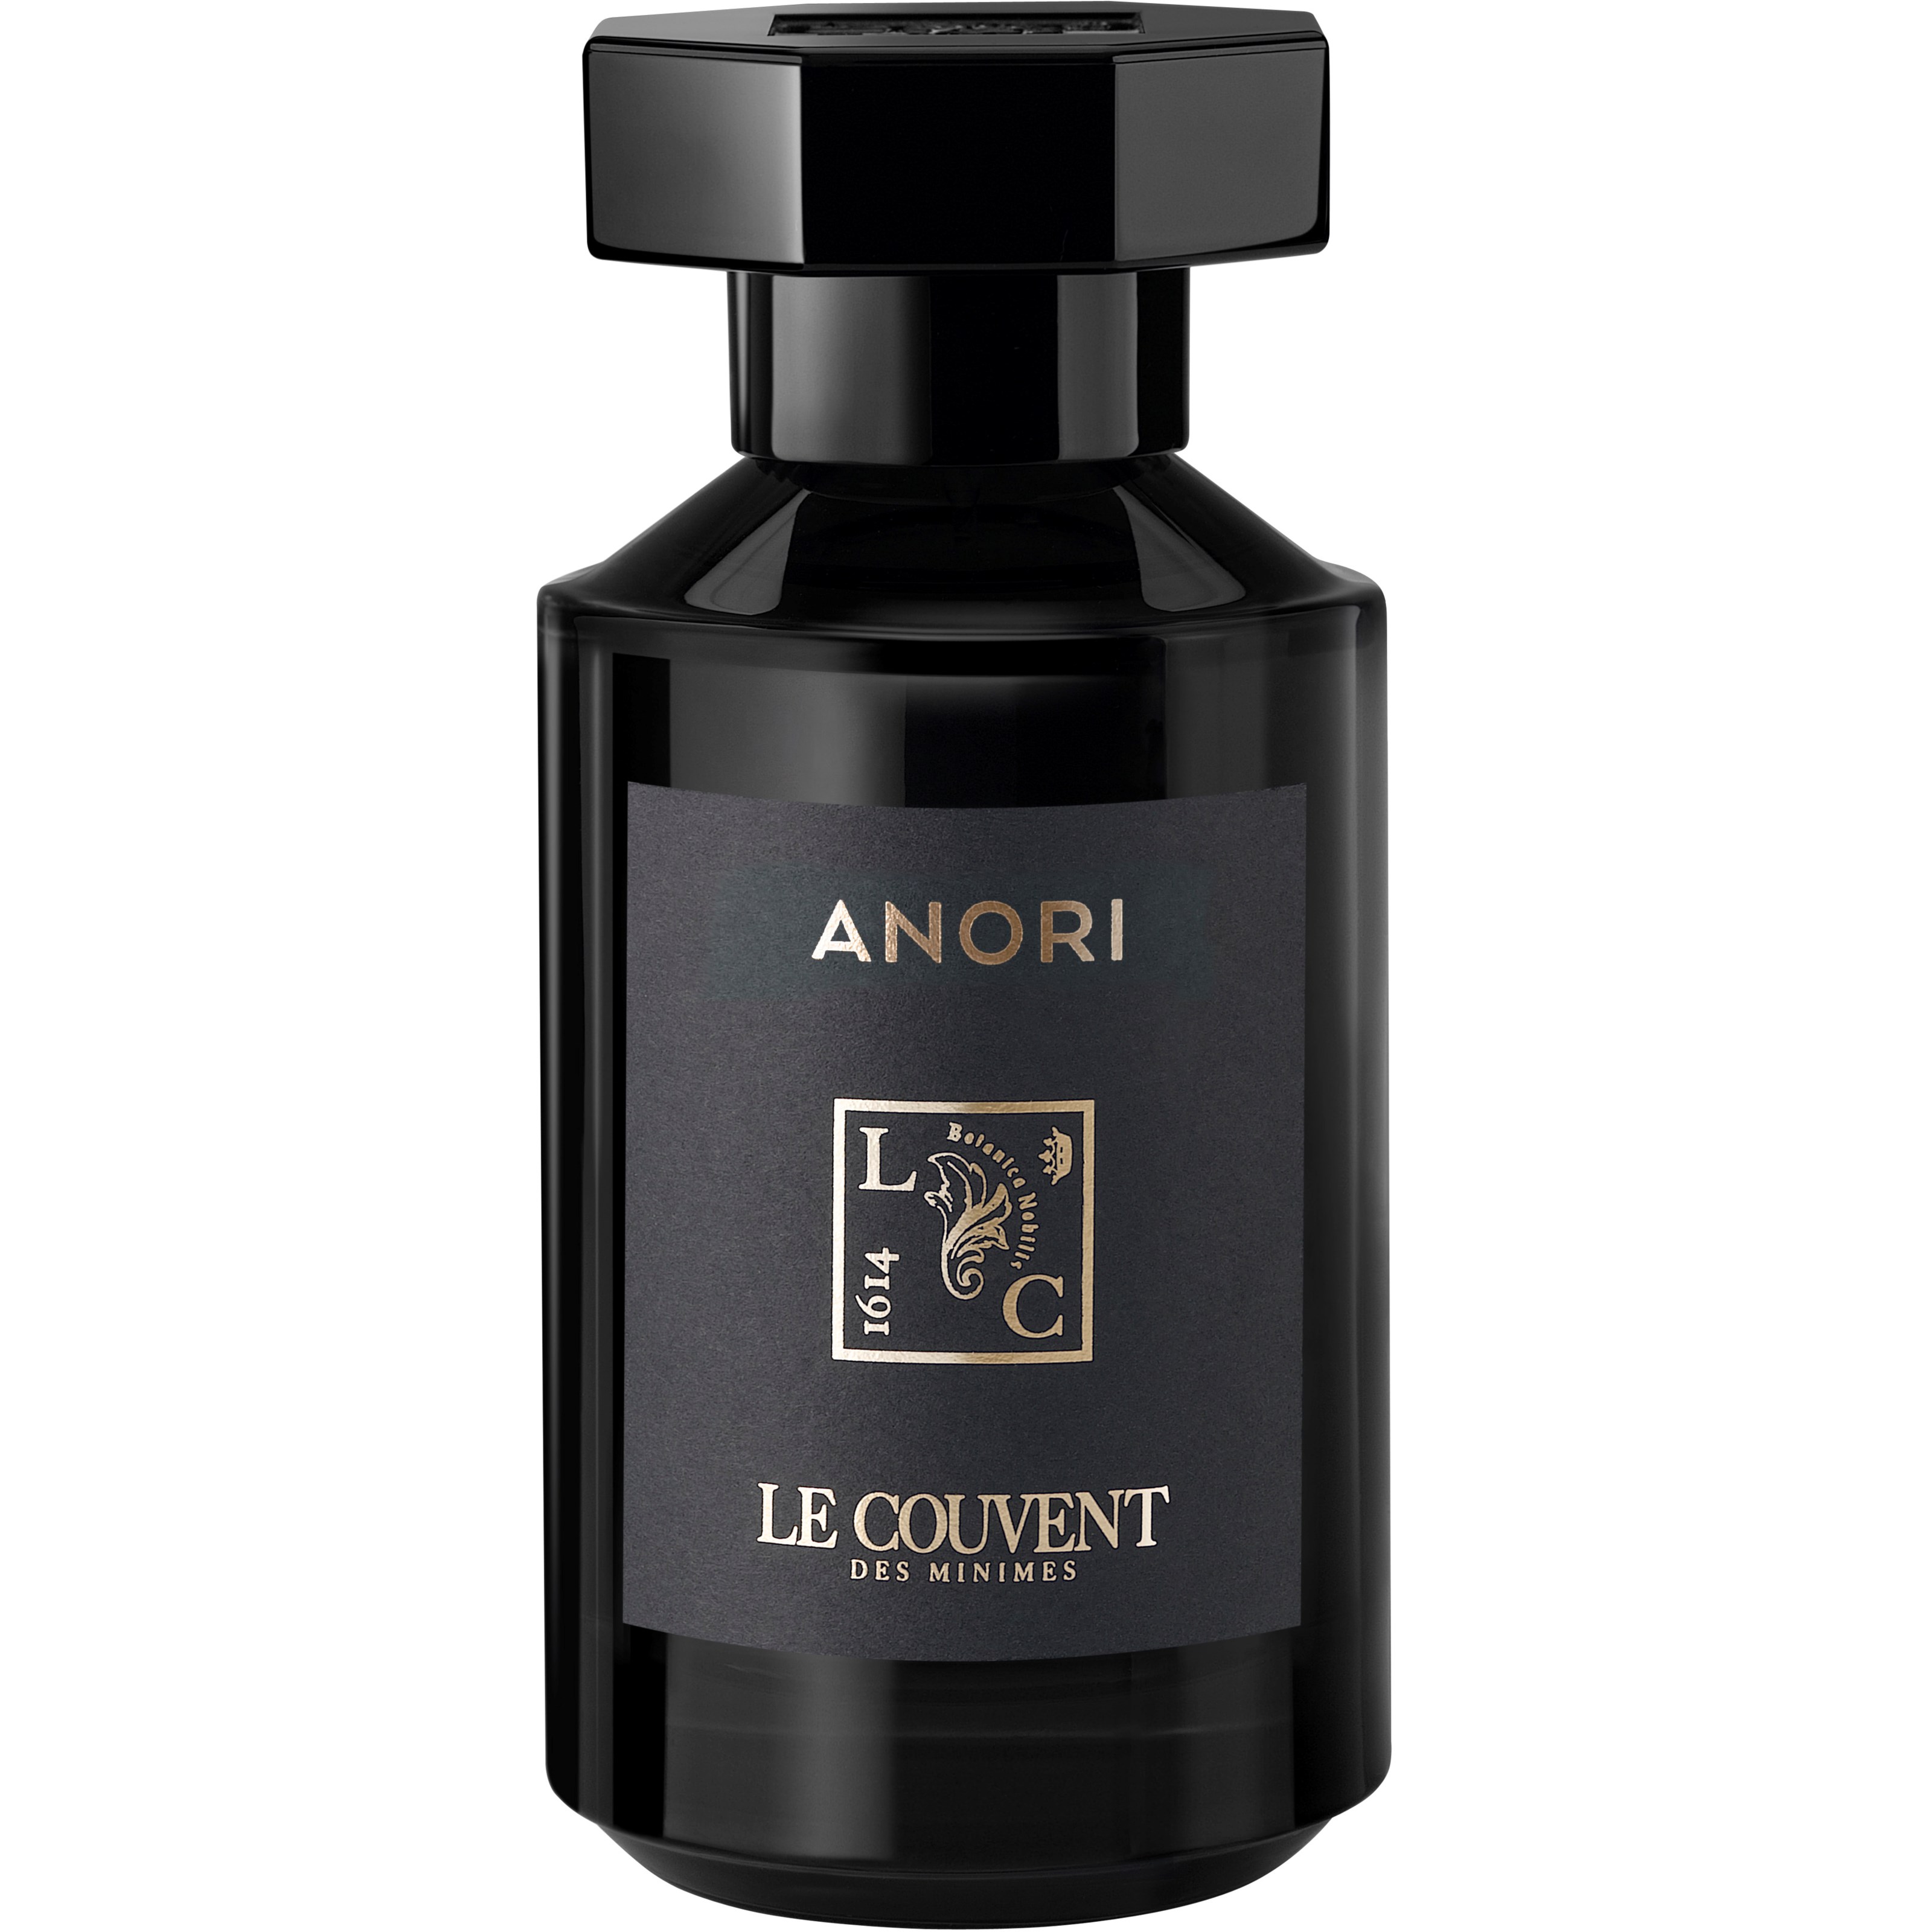 Bilde av Le Couvent Anori Remarkable Perfumes Eau De Parfum 50 Ml